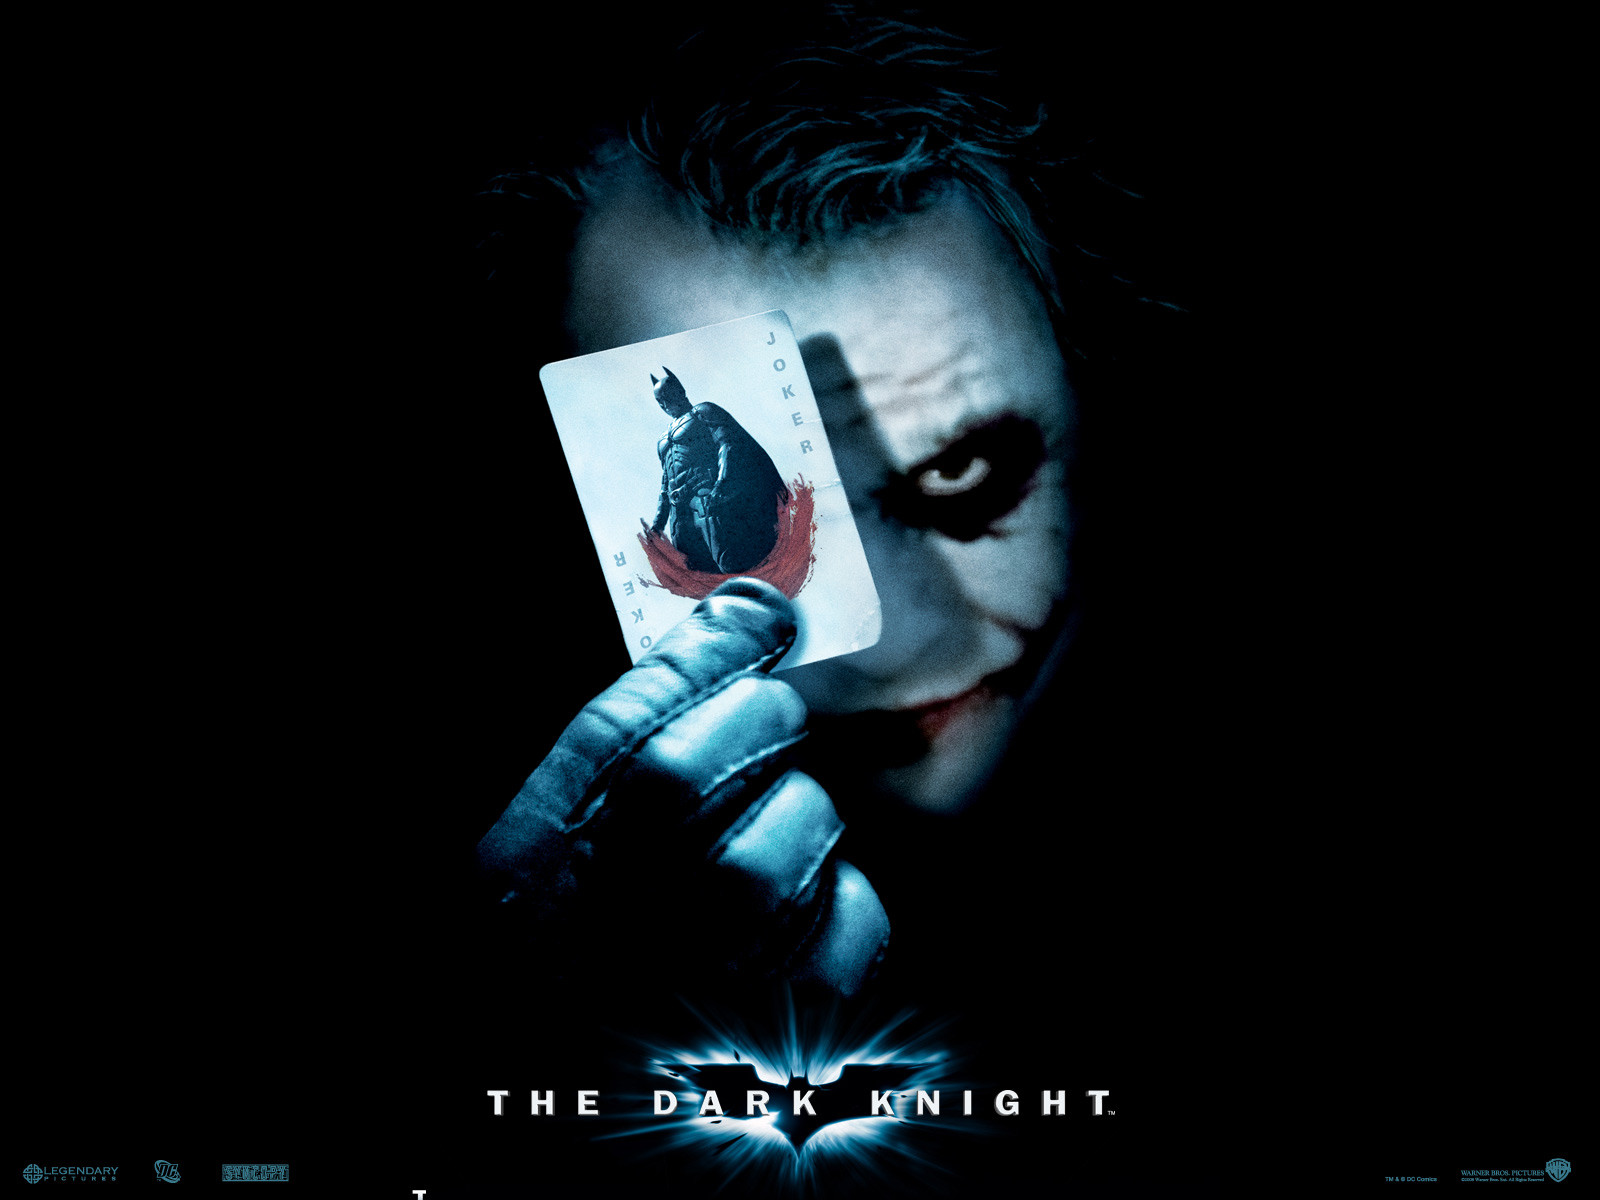 فيلم الخيال والفانتازيا والغموض  The Dark Knight  2008  كامل ومترجم وبنسخة DVD RIB وعلي سيرفر اسرع من الميديا فاير The_da10